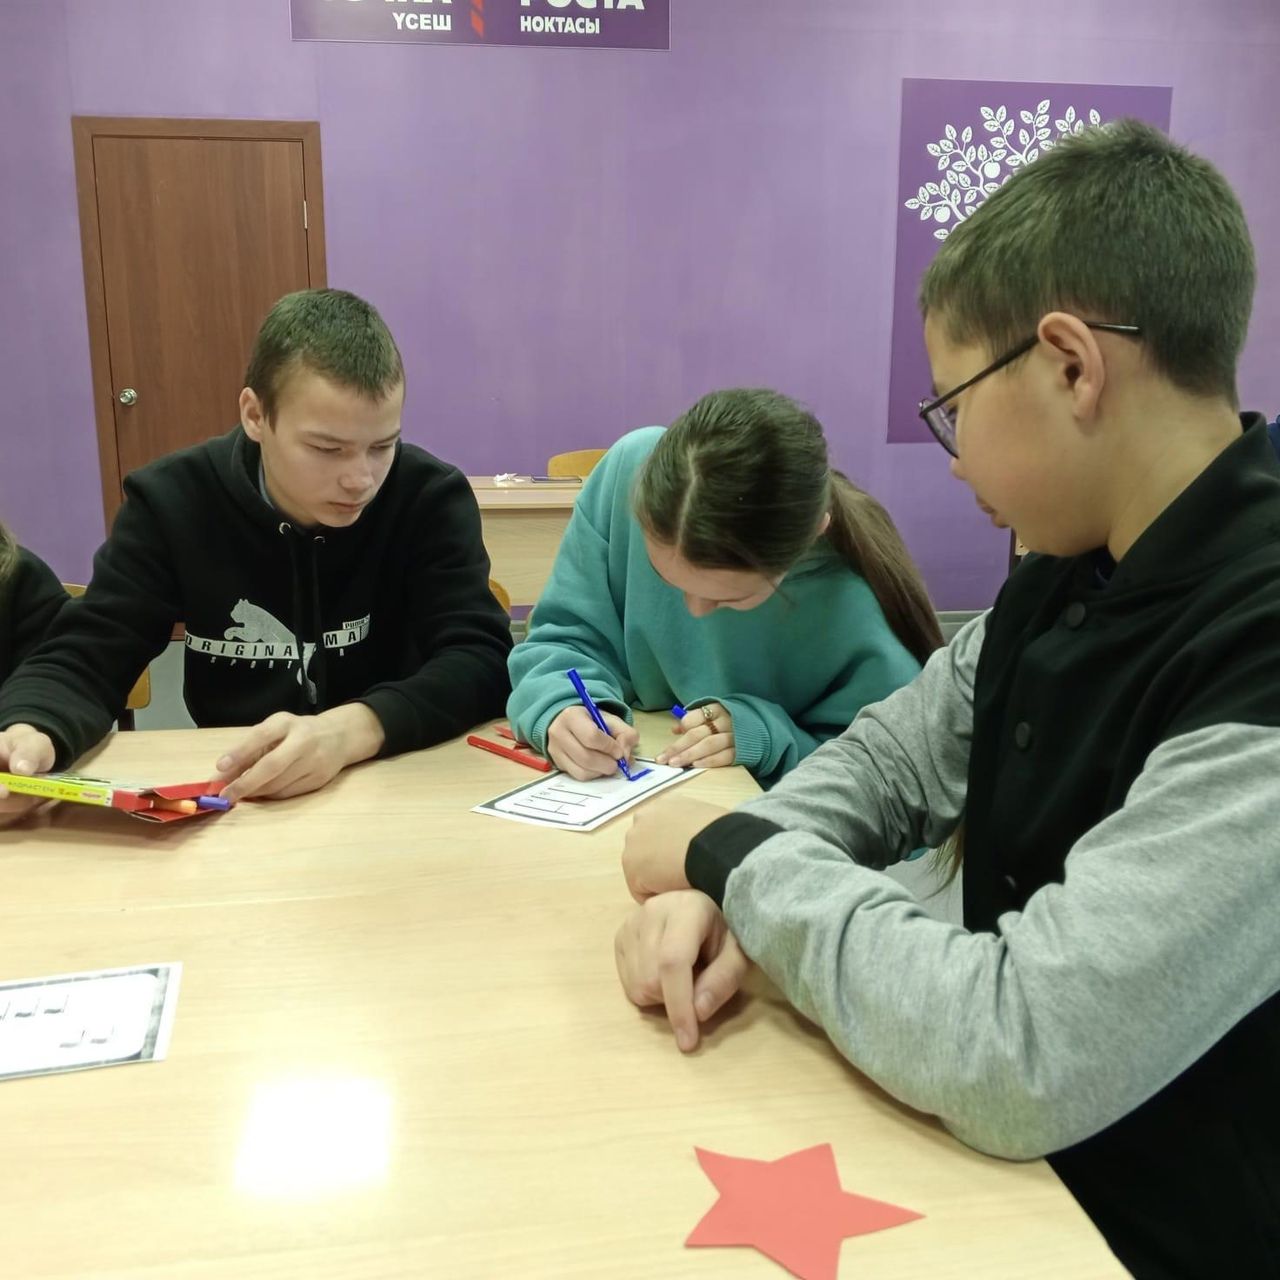 В школах района прошли мероприятия, посвященные Дню принятия Законов о государственных символах России